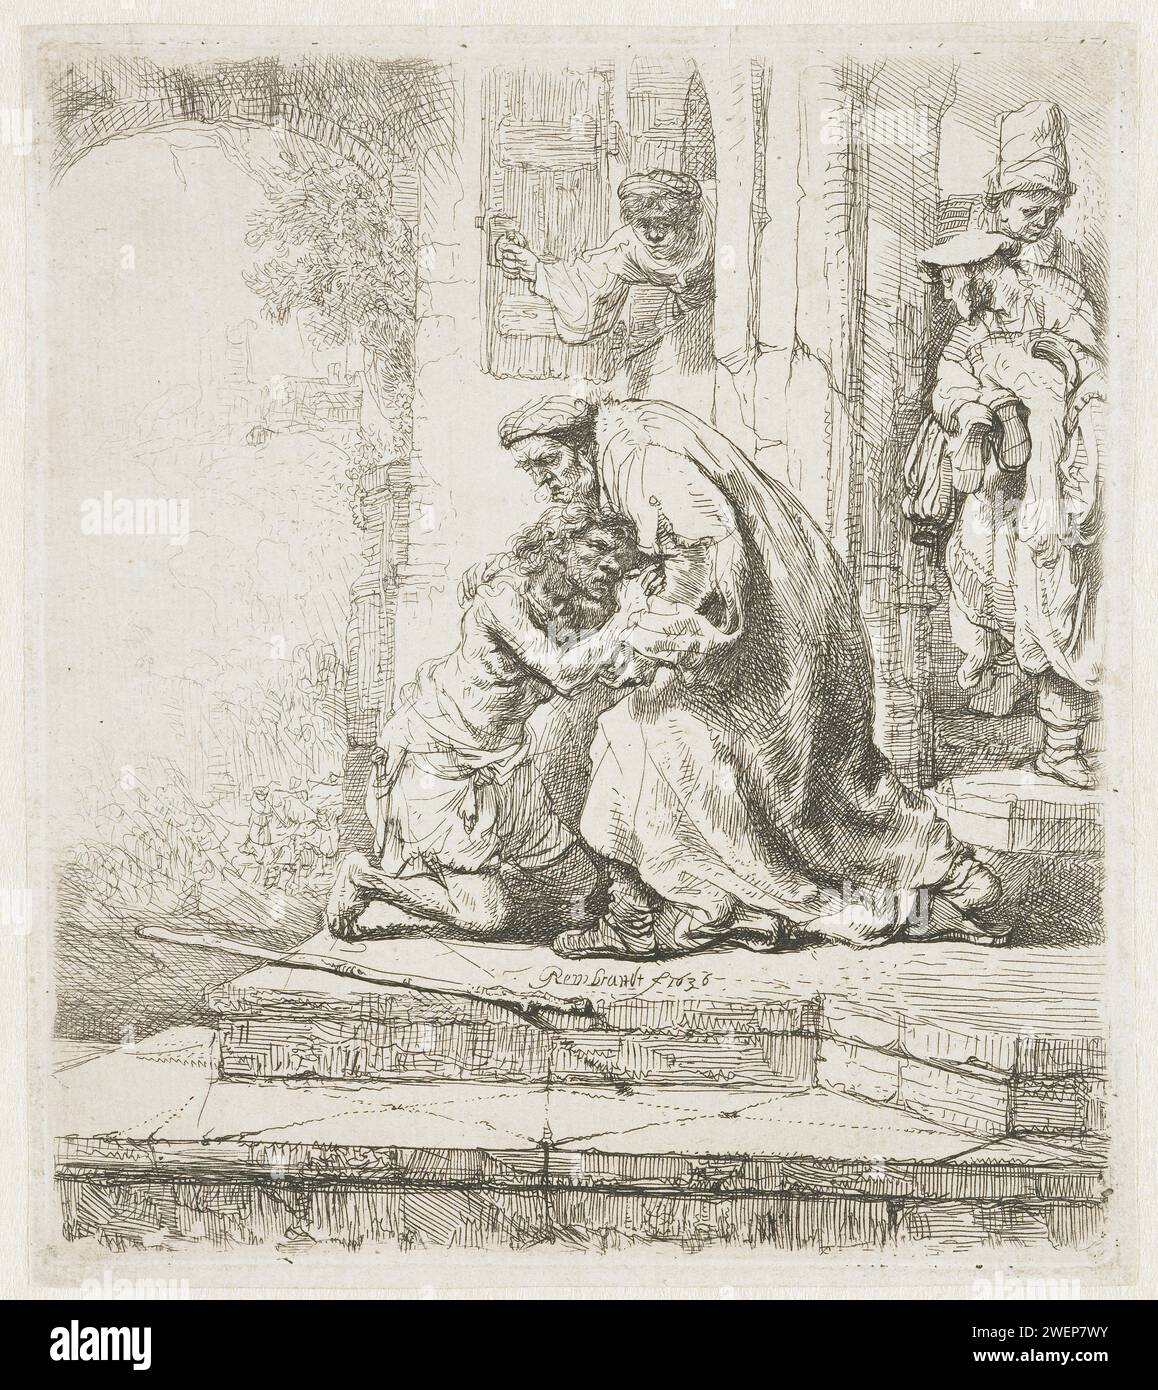 Die Rückkehr des verlorenen Sohnes, Rembrandt van Rijn, 1636 drucken die Rückkehr des verlorenen Sohnes: Er kniet für seinen Vater bei der Landung seines Elternhauses. Zwei Figuren in der Tür, ein Drittel schaut aus dem Fenster. Papier, das das Gleichnis vom verlorenen Sohn ätzt (Lukas 15:11-32) Stockfoto